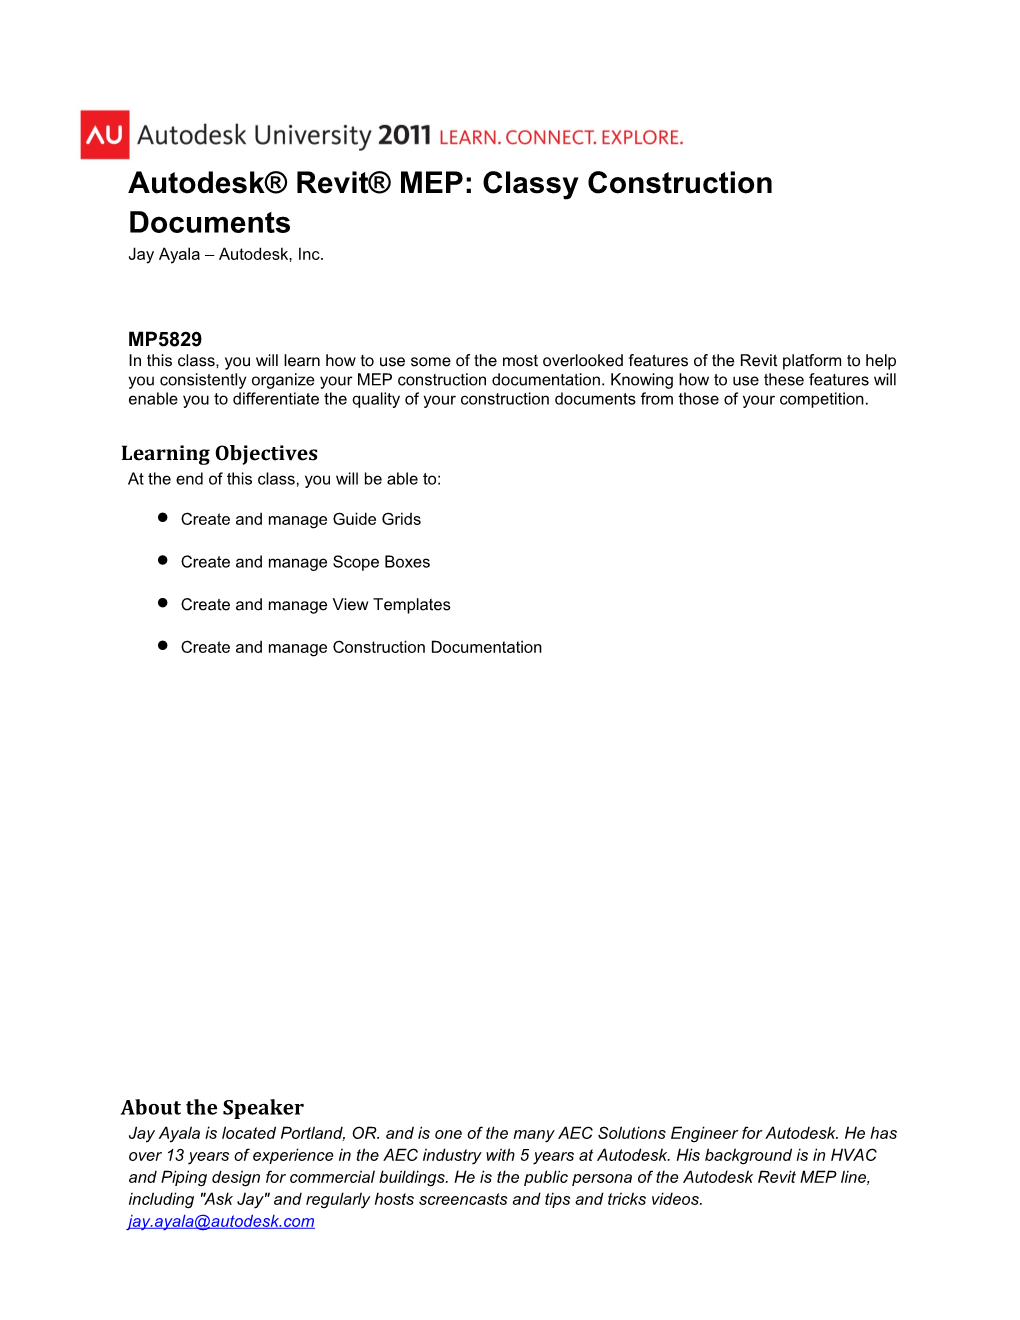 Autodesk Revit MEP: Classy Construction Documents